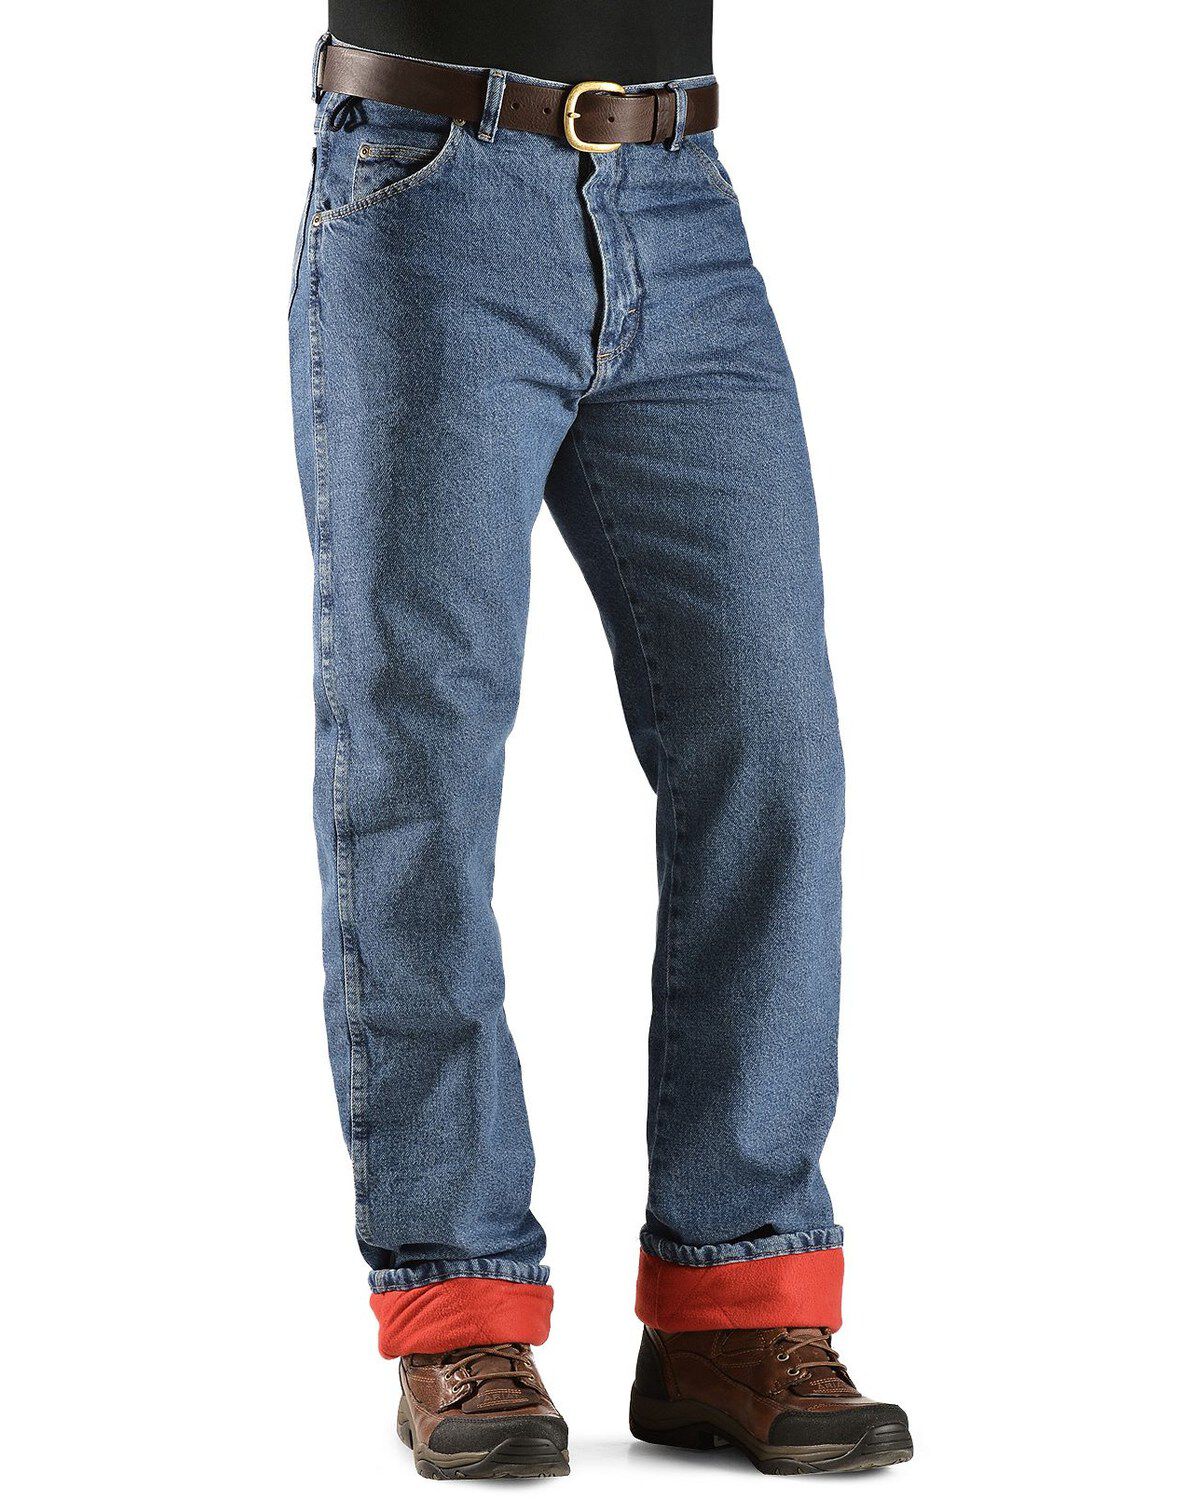 wrangler rugged wear fleece lined jeans